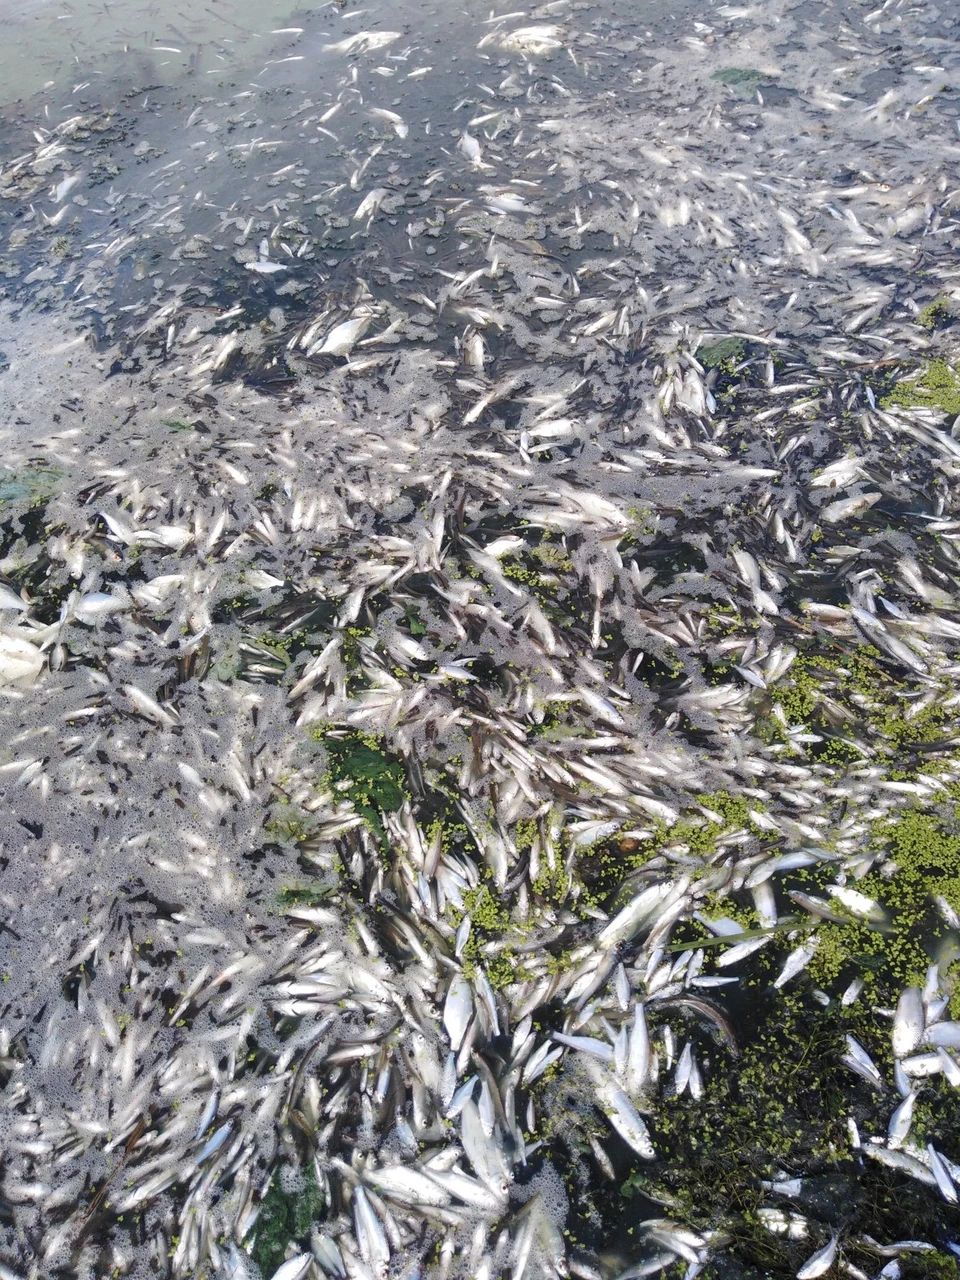 Специалисты устанавливают причины гибели рыбы ФОТО: Екатерина Костылева